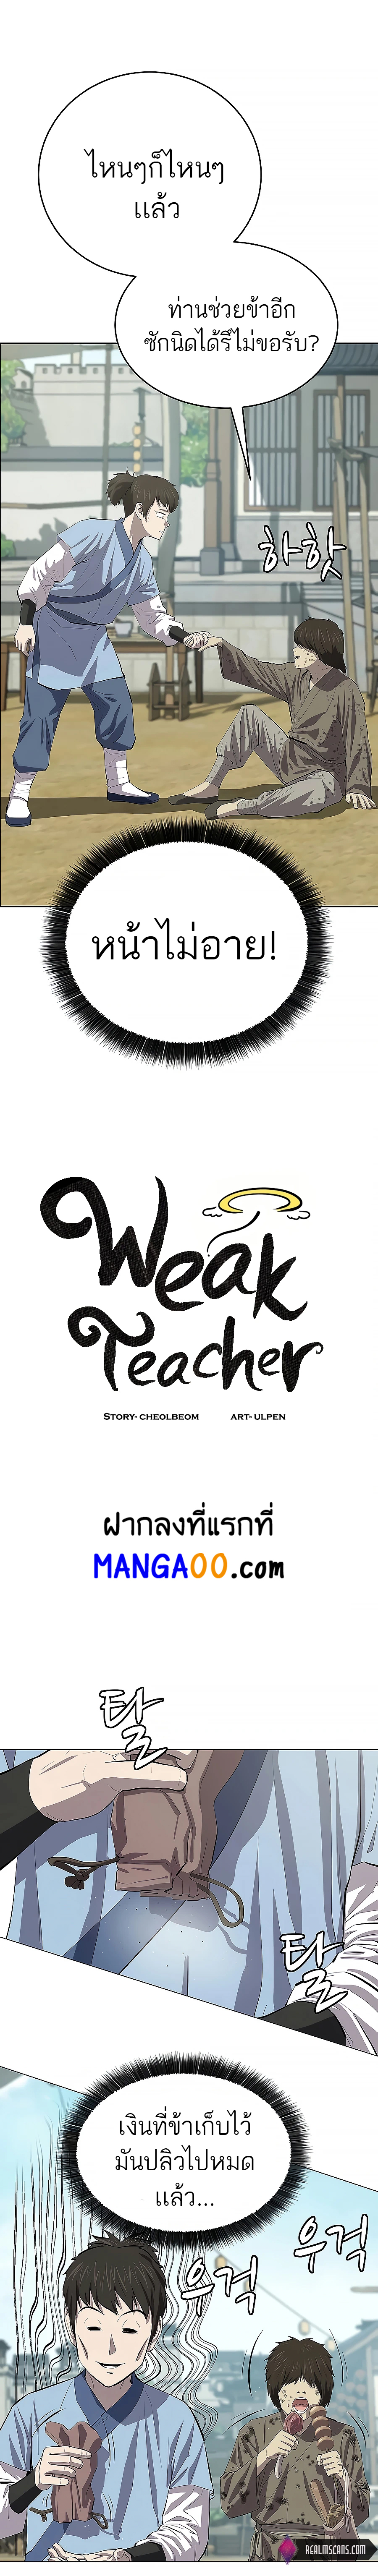 Weak Teacher 78 12